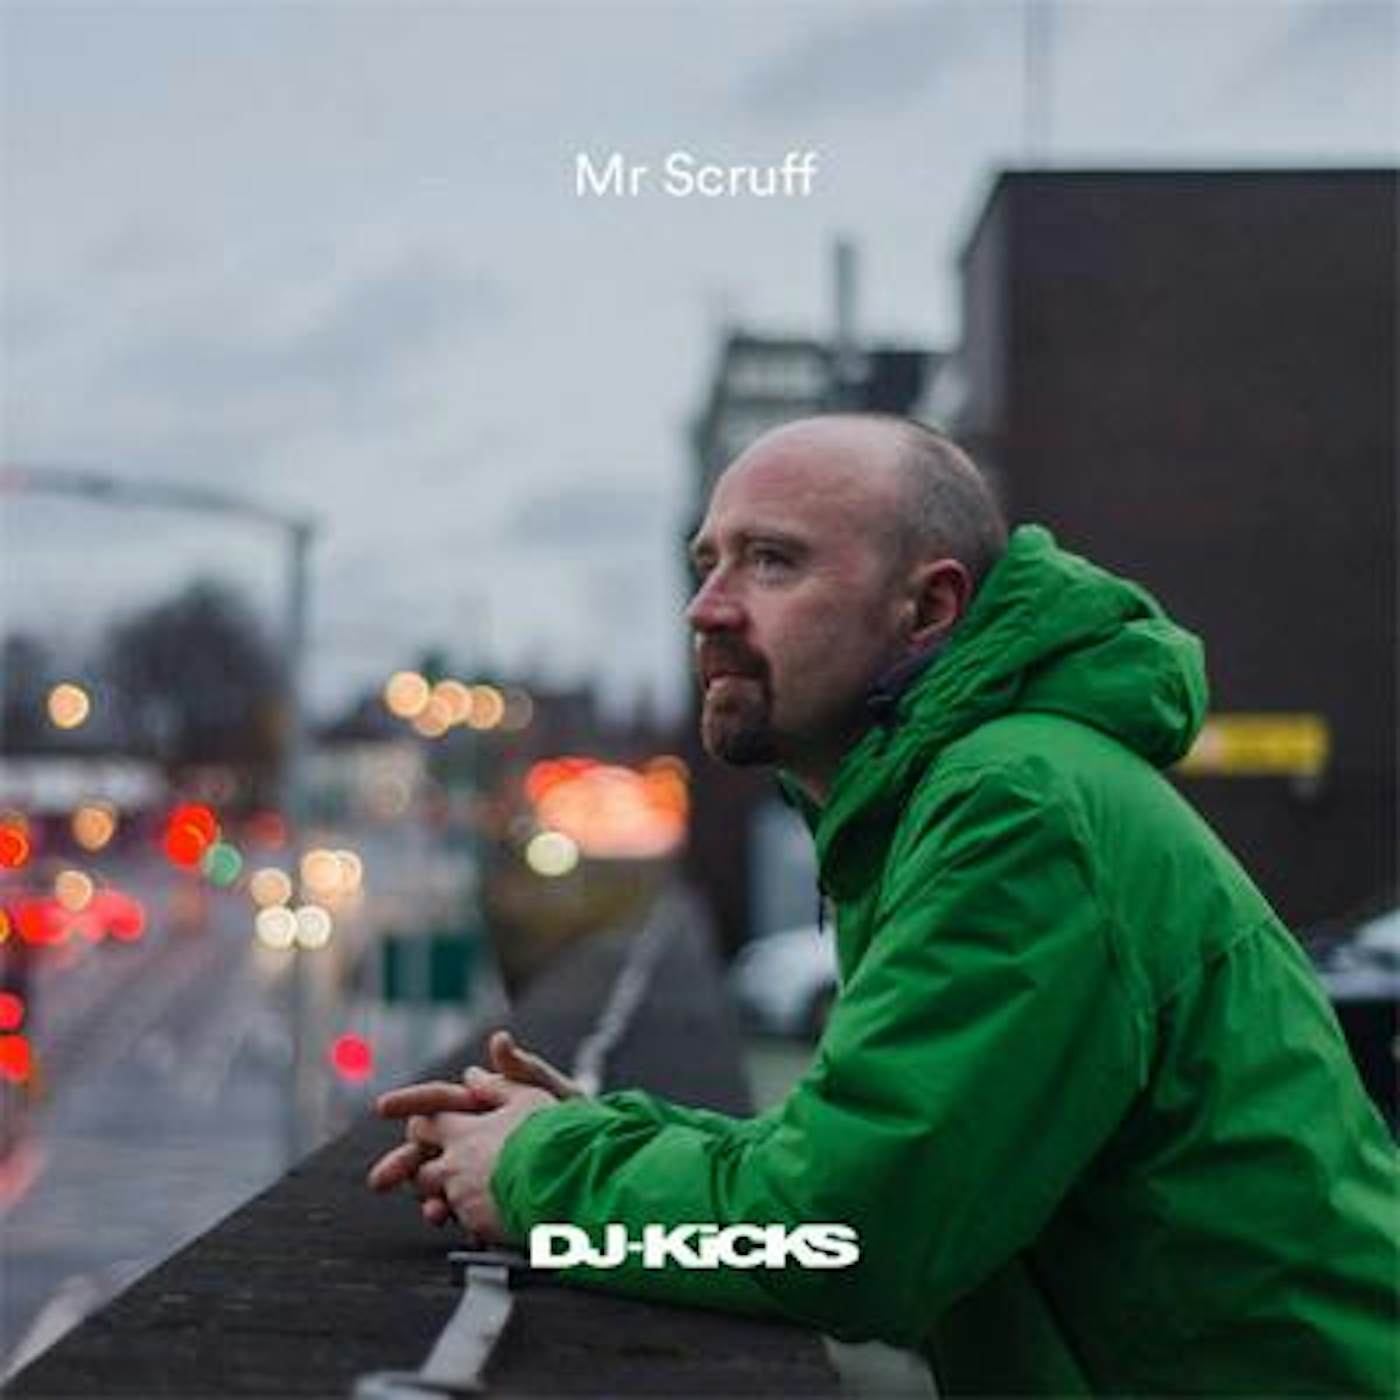 Mr. Scruff DJ-KICKS Vinyl Record